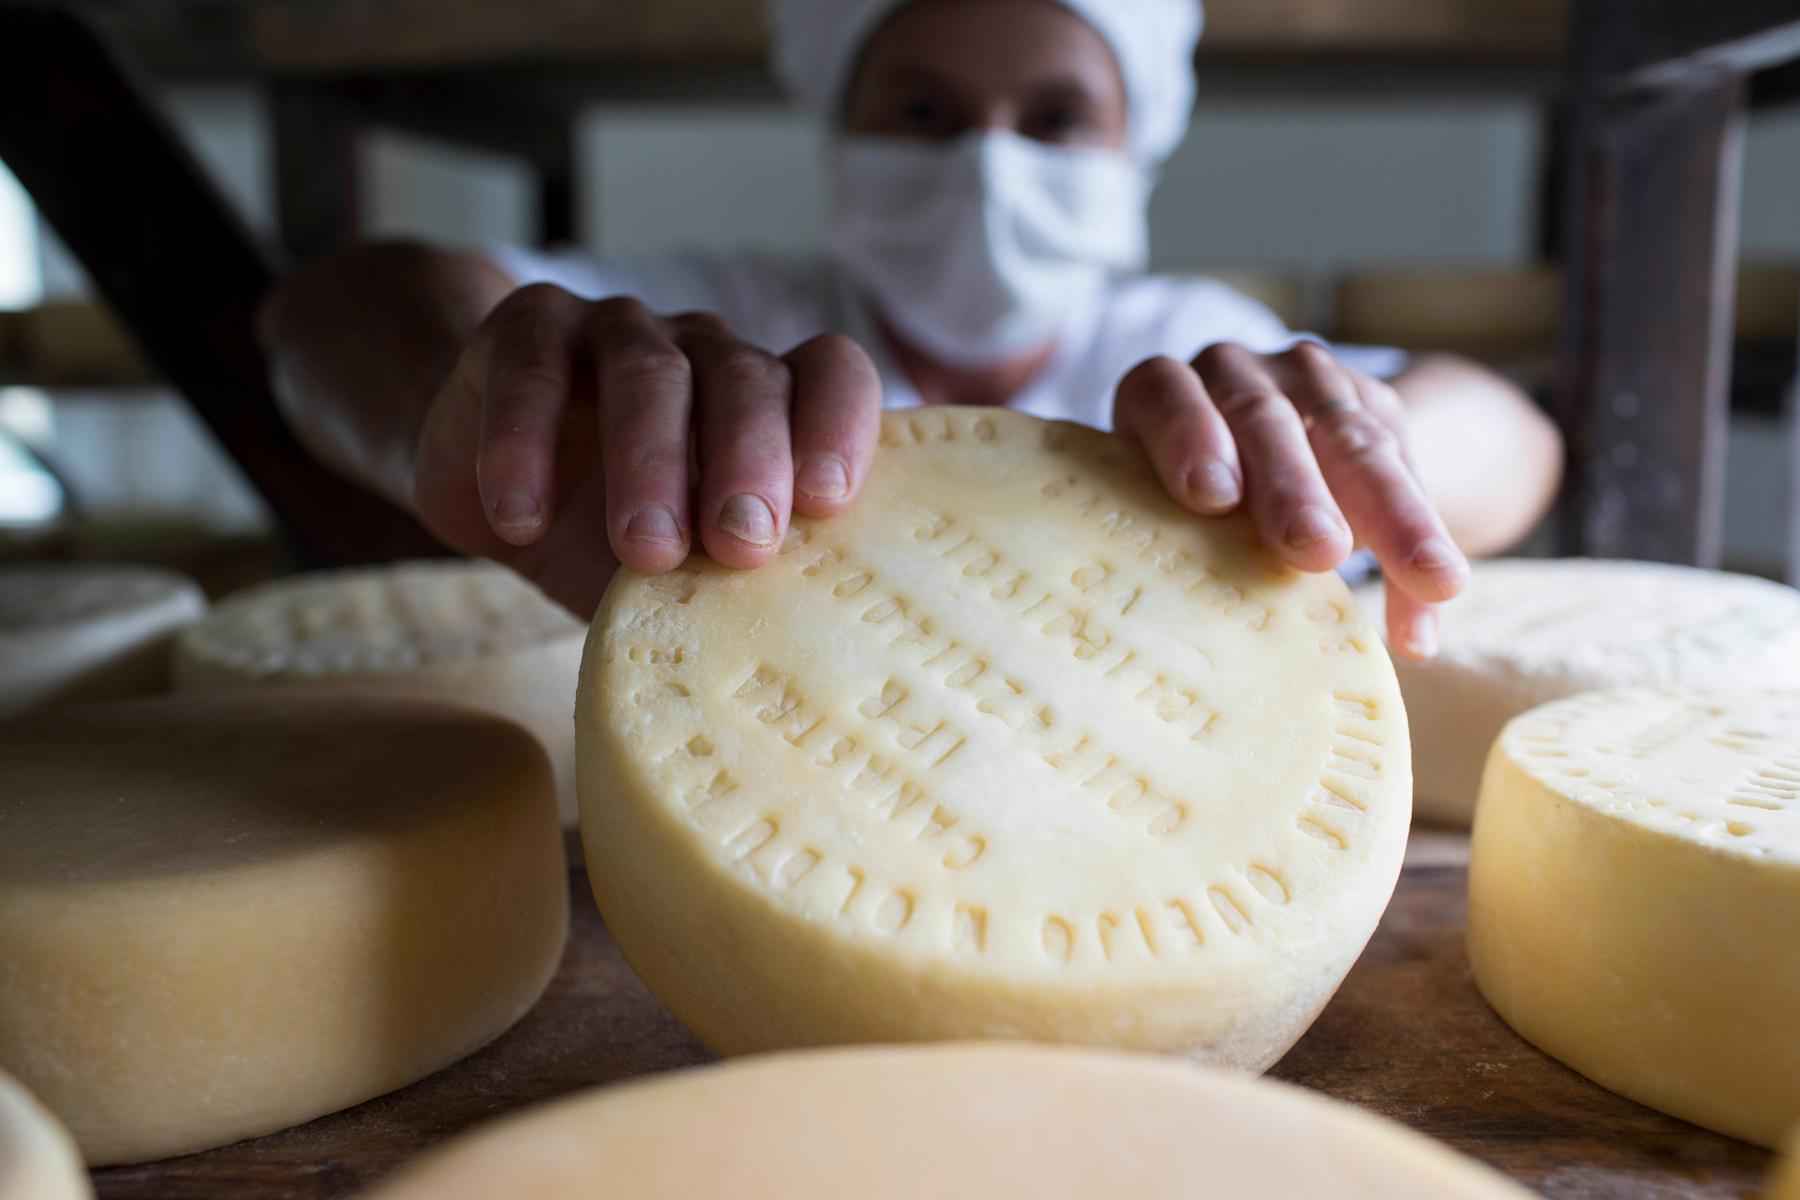 Se o mineiro ama um queijinho, se souber do queijão Canastra vai pirar - Aprocan/Divulgação